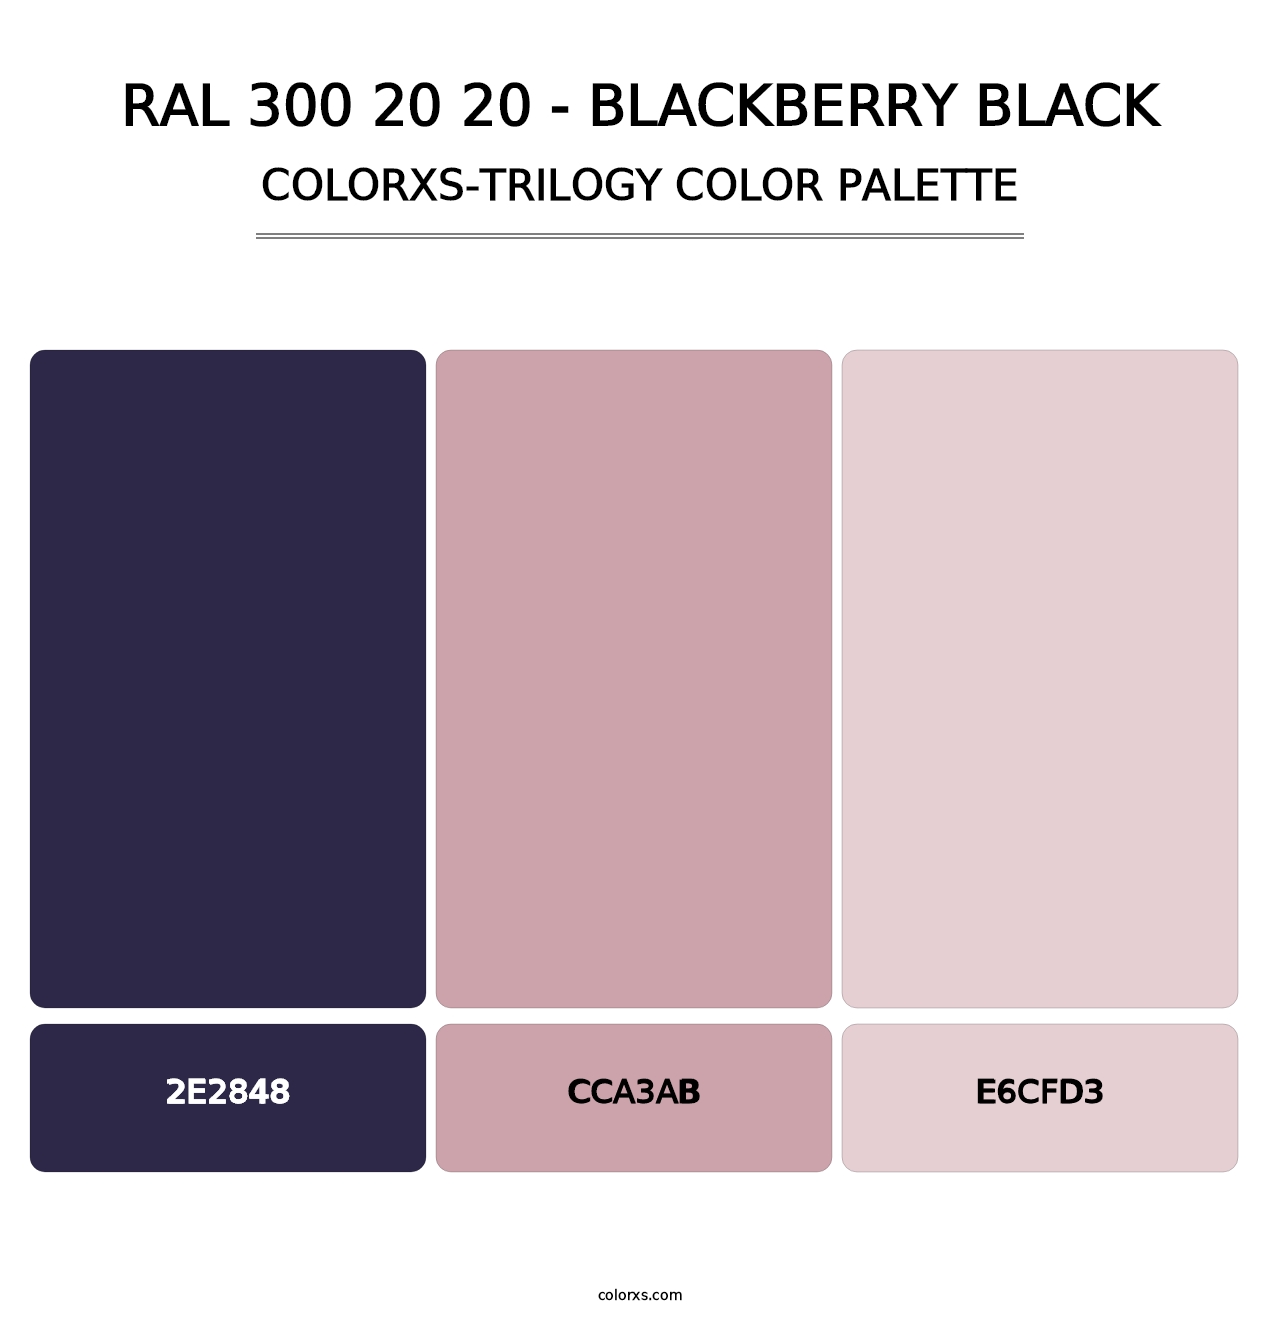 RAL 300 20 20 - Blackberry Black - Colorxs Trilogy Palette